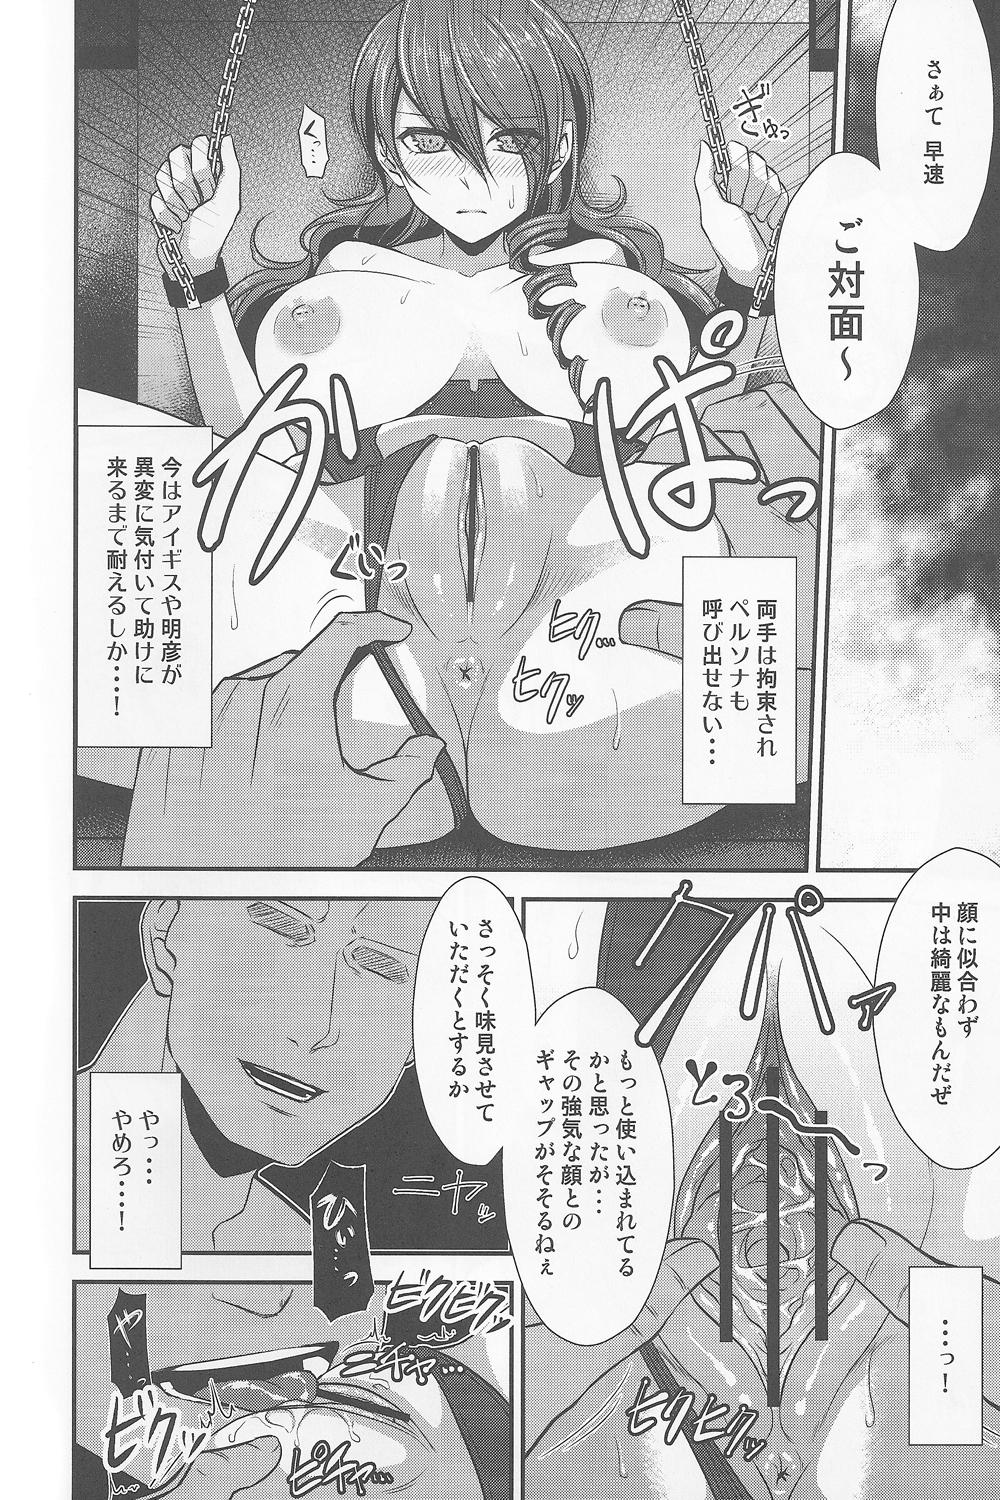 Rubdown Shokuzai - Persona 3 Oil - Page 7